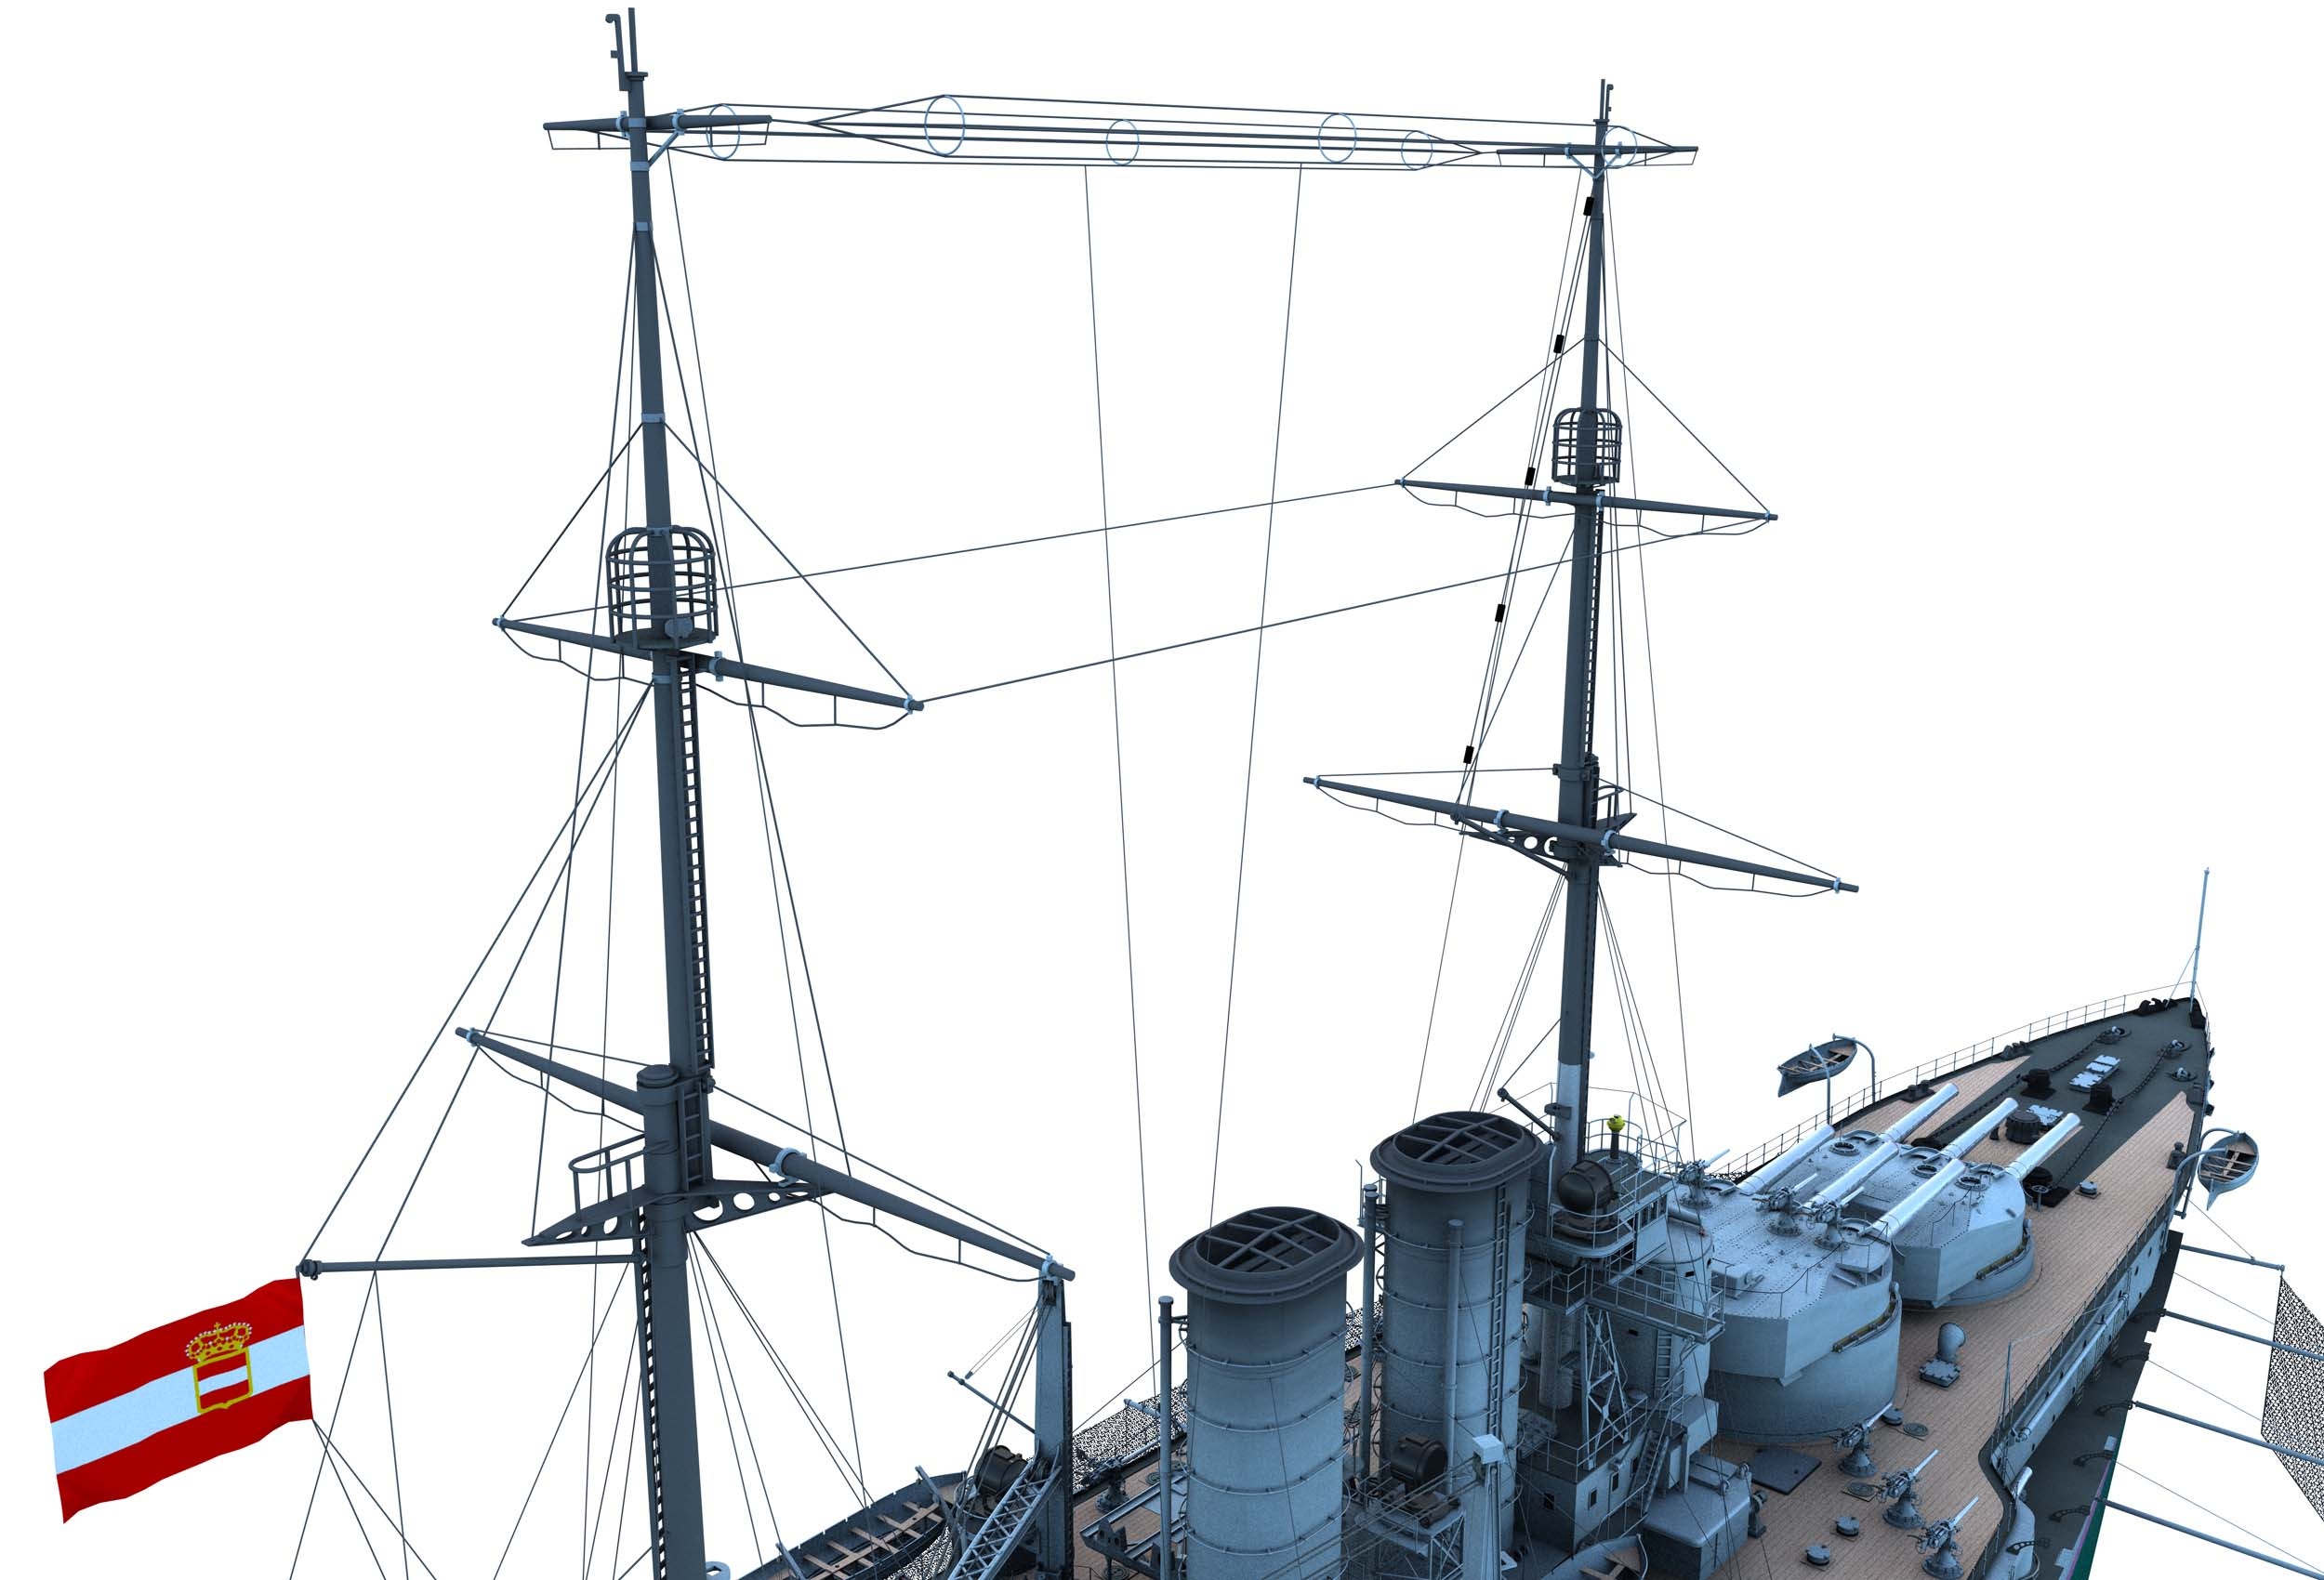 https://0901.nccdn.net/4_2/000/000/04d/add/CK130-Partial-Ship-Naval-Ensign-and-Mast-Tops-2500x1700.jpg